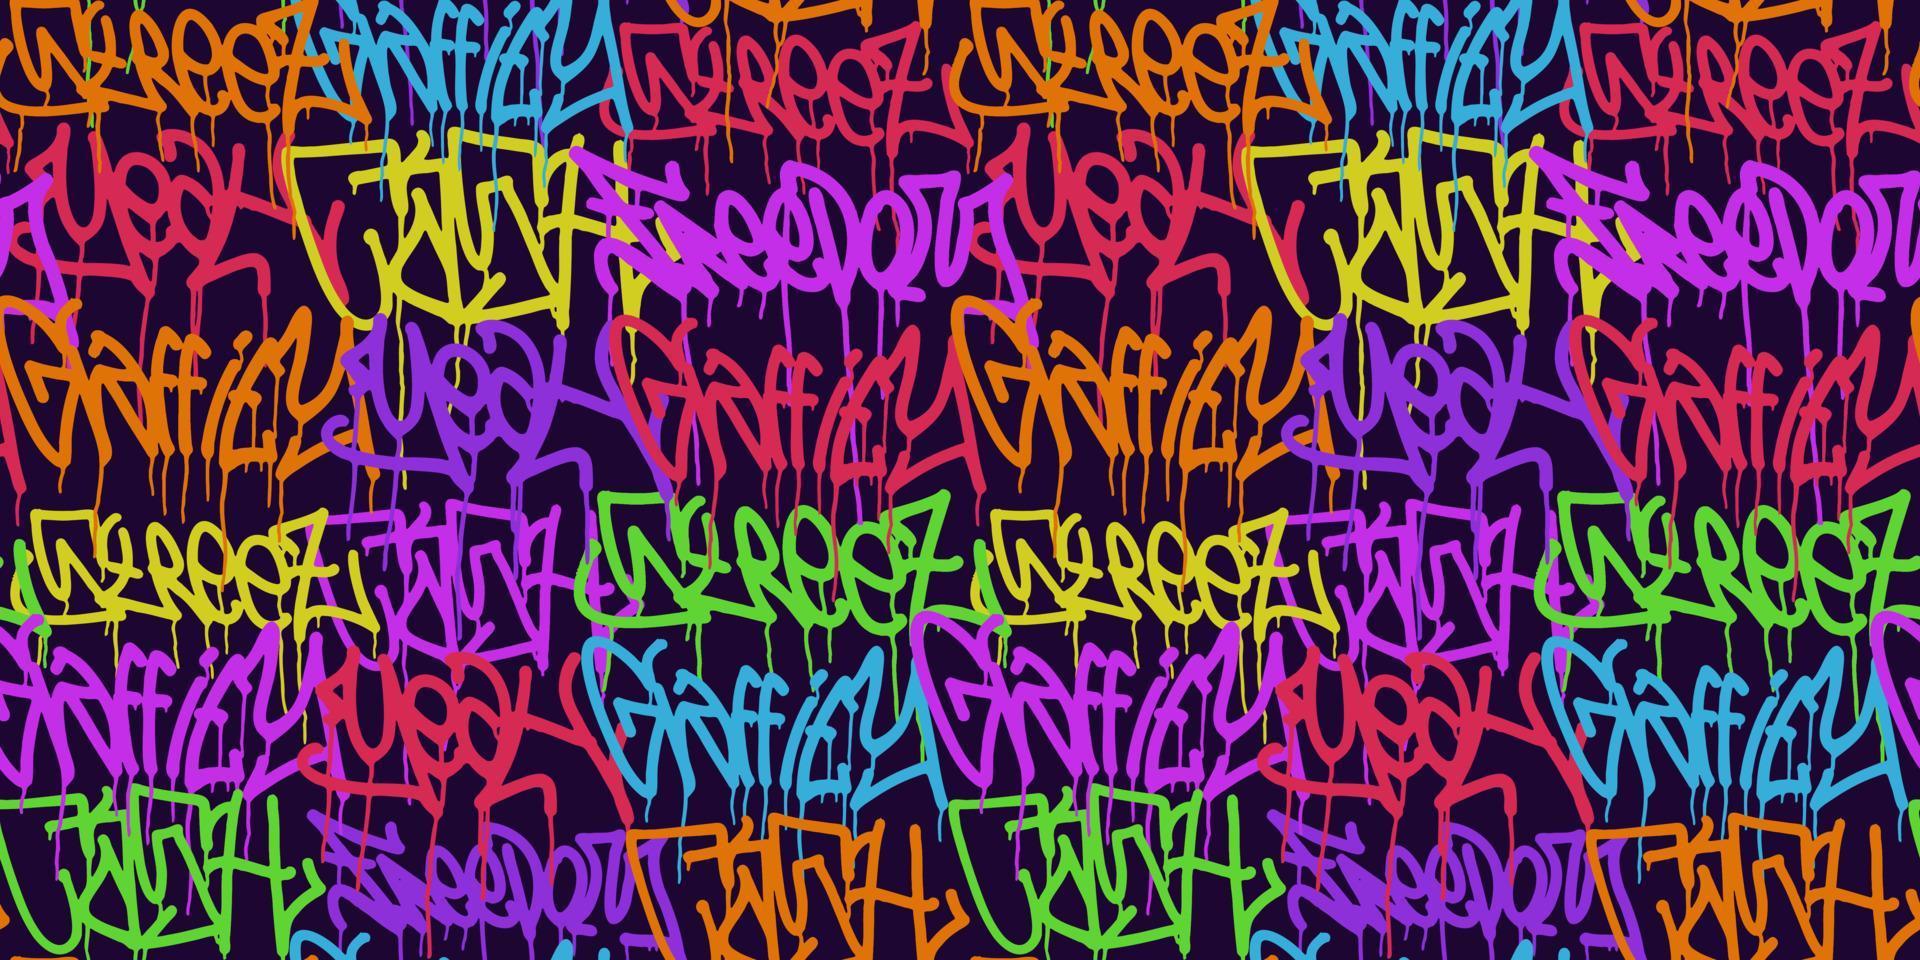 graffiti achtergrond met markeerstift brieven, helder gekleurde belettering tags vector